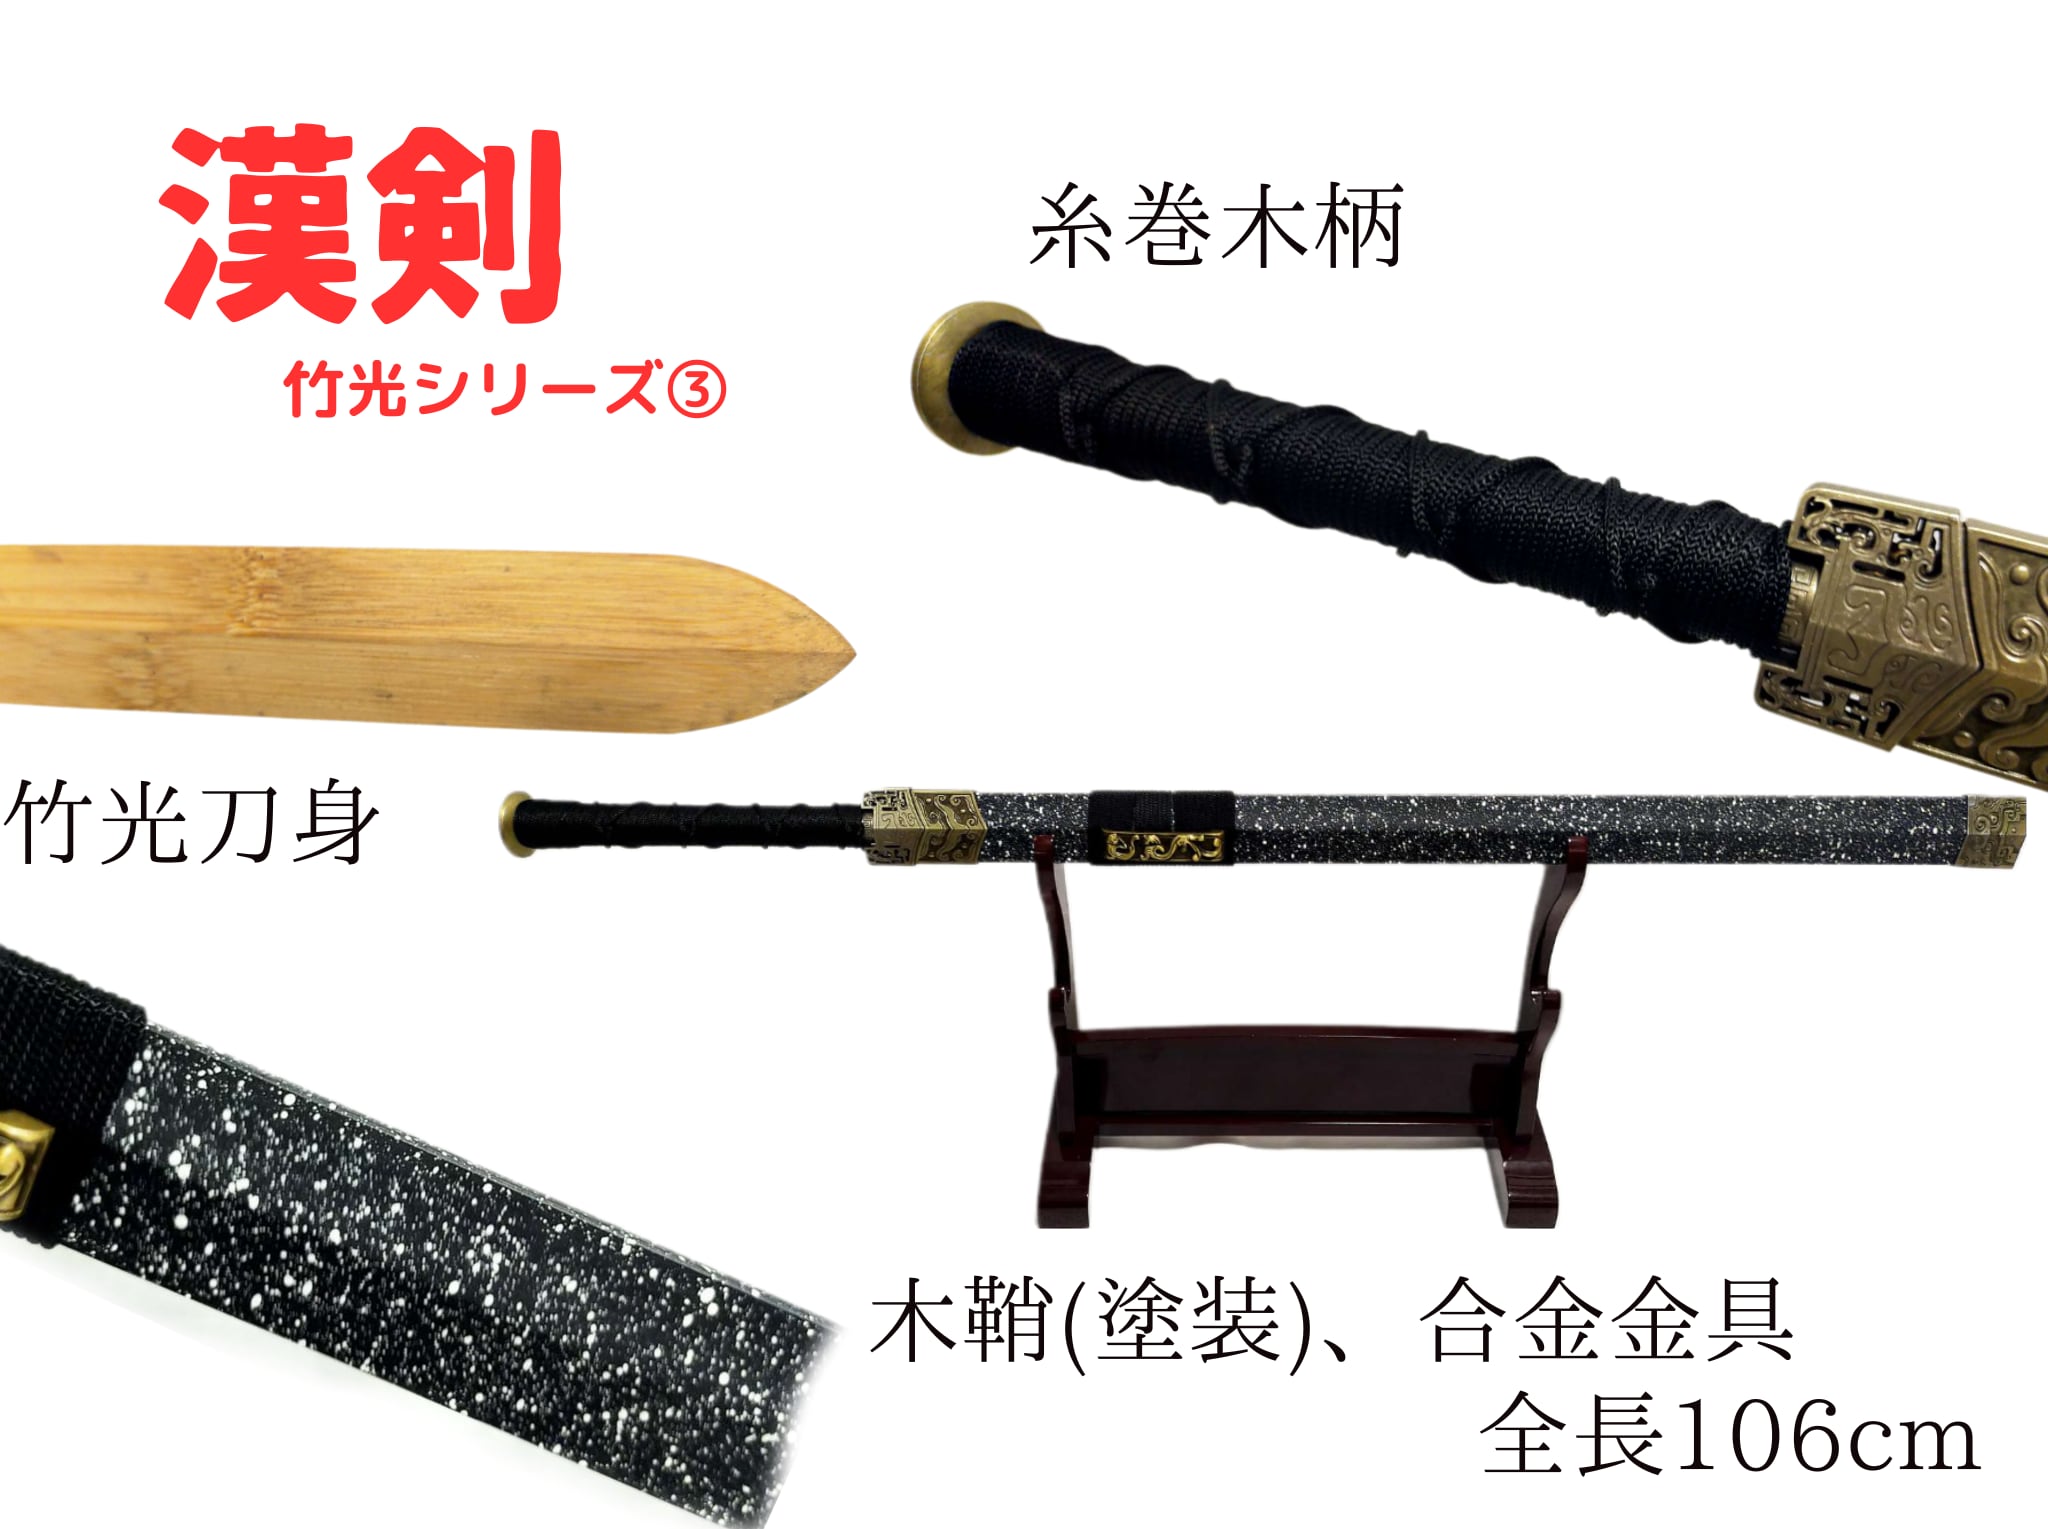 古代中国の剣(白黒石目) 竹光刀身 直剣 模造刀 模擬刀 演劇小道具 高級